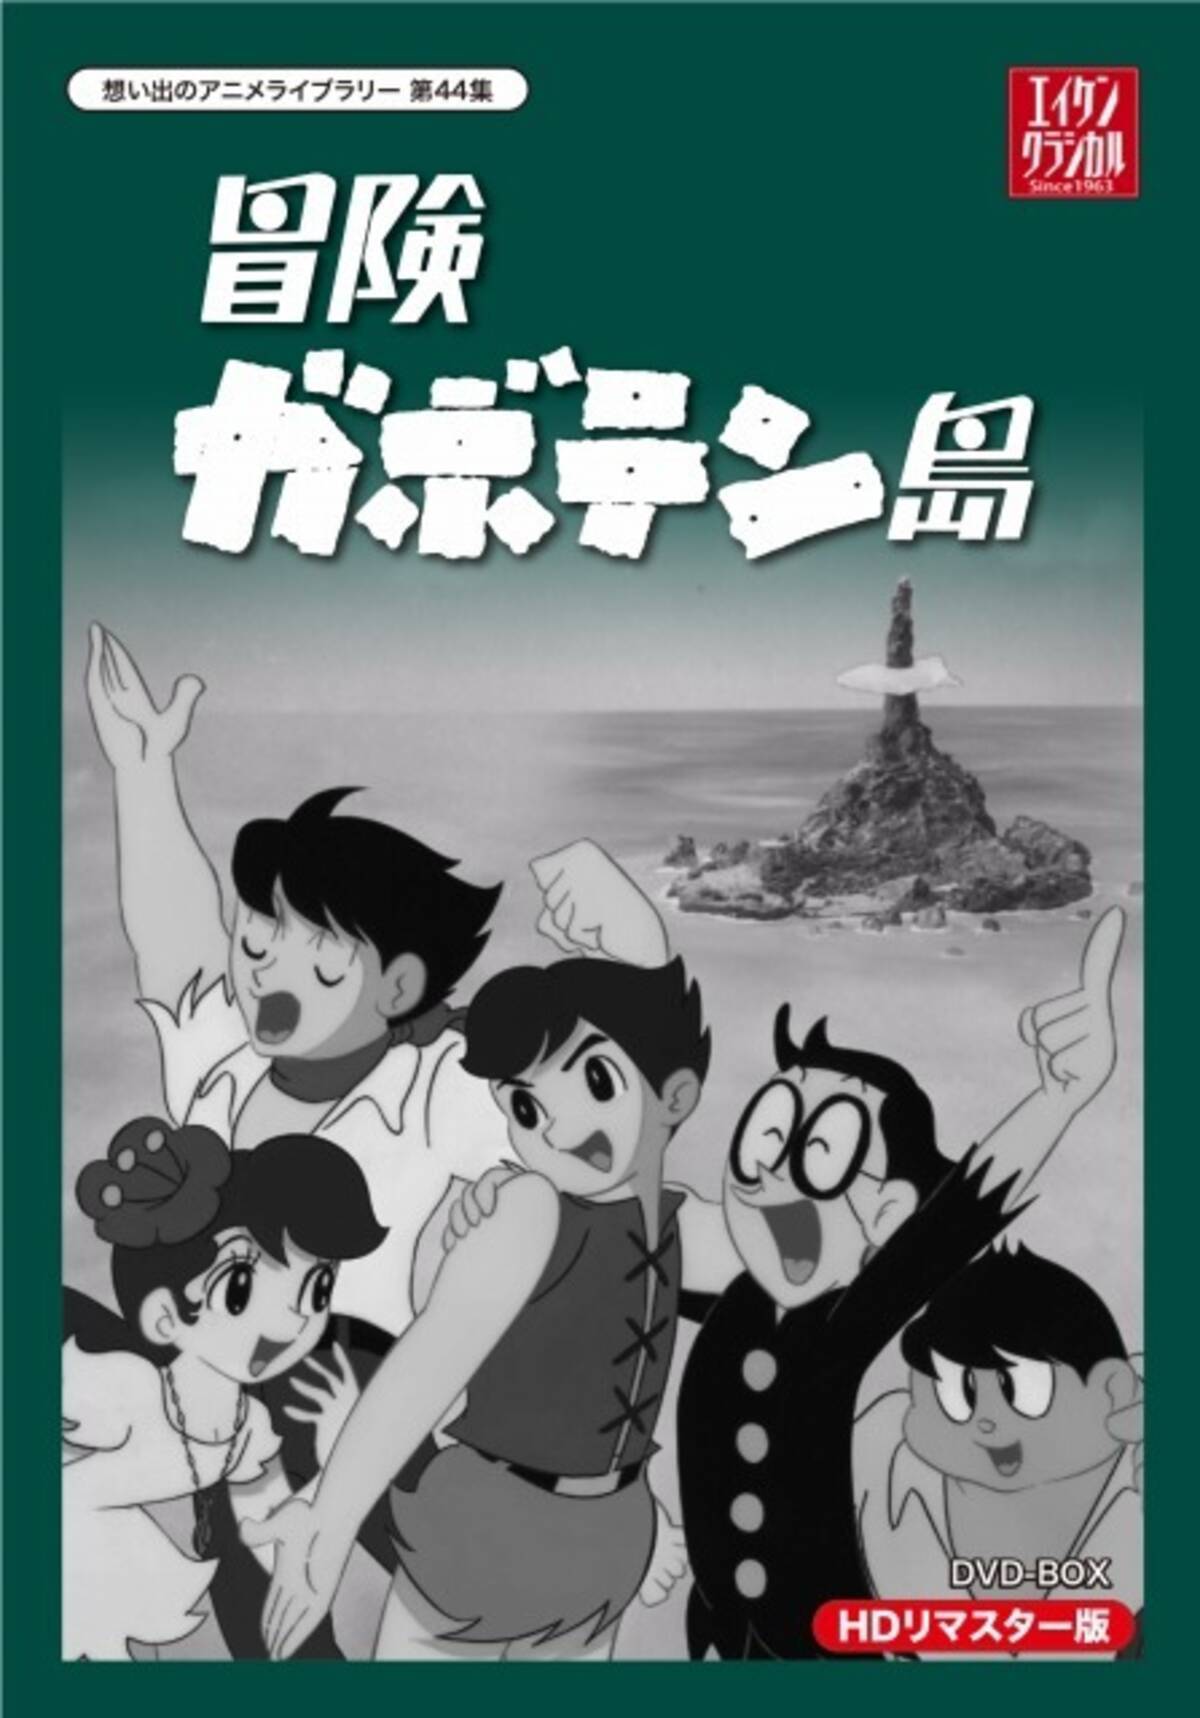 冒険ガボテン島 1967年放送の白黒アニメがdvd Boxで復活 15年11月4日 エキサイトニュース